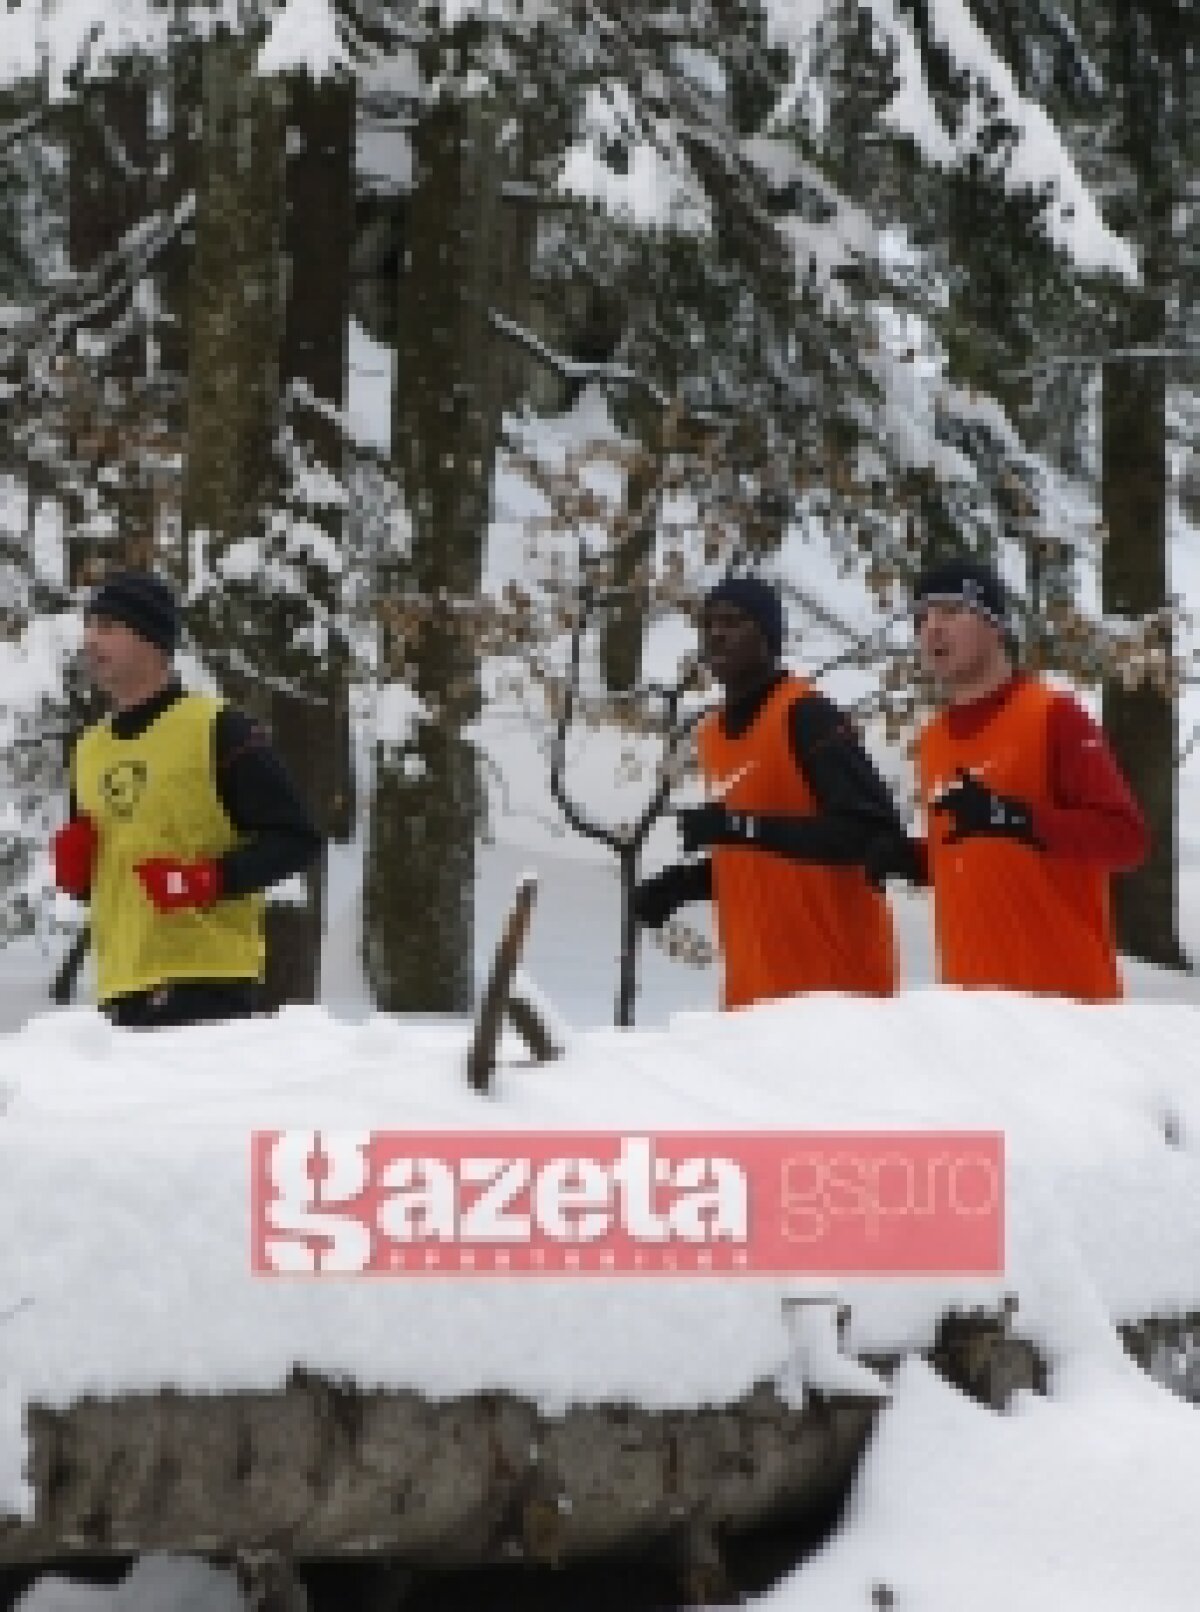 FOTO / Dinamoviştii sînt extenuaţi după antrenamentul printre troiene